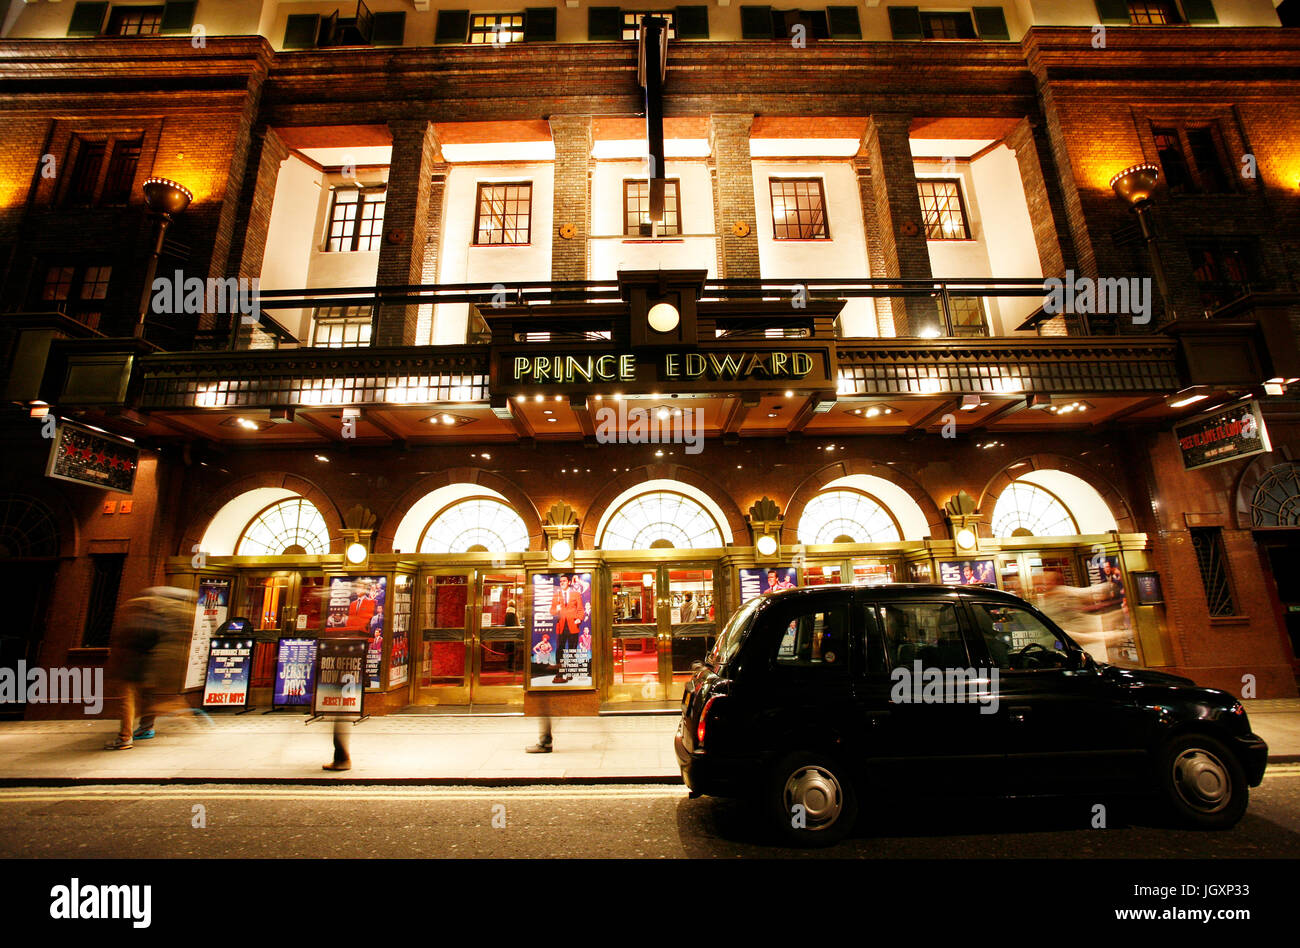 London , UK - le 11 décembre 2012 : vue extérieure de Prince Edward Theatre, West End theatre, situé sur Old Compton Street, City of westminster, depuis 19 Banque D'Images